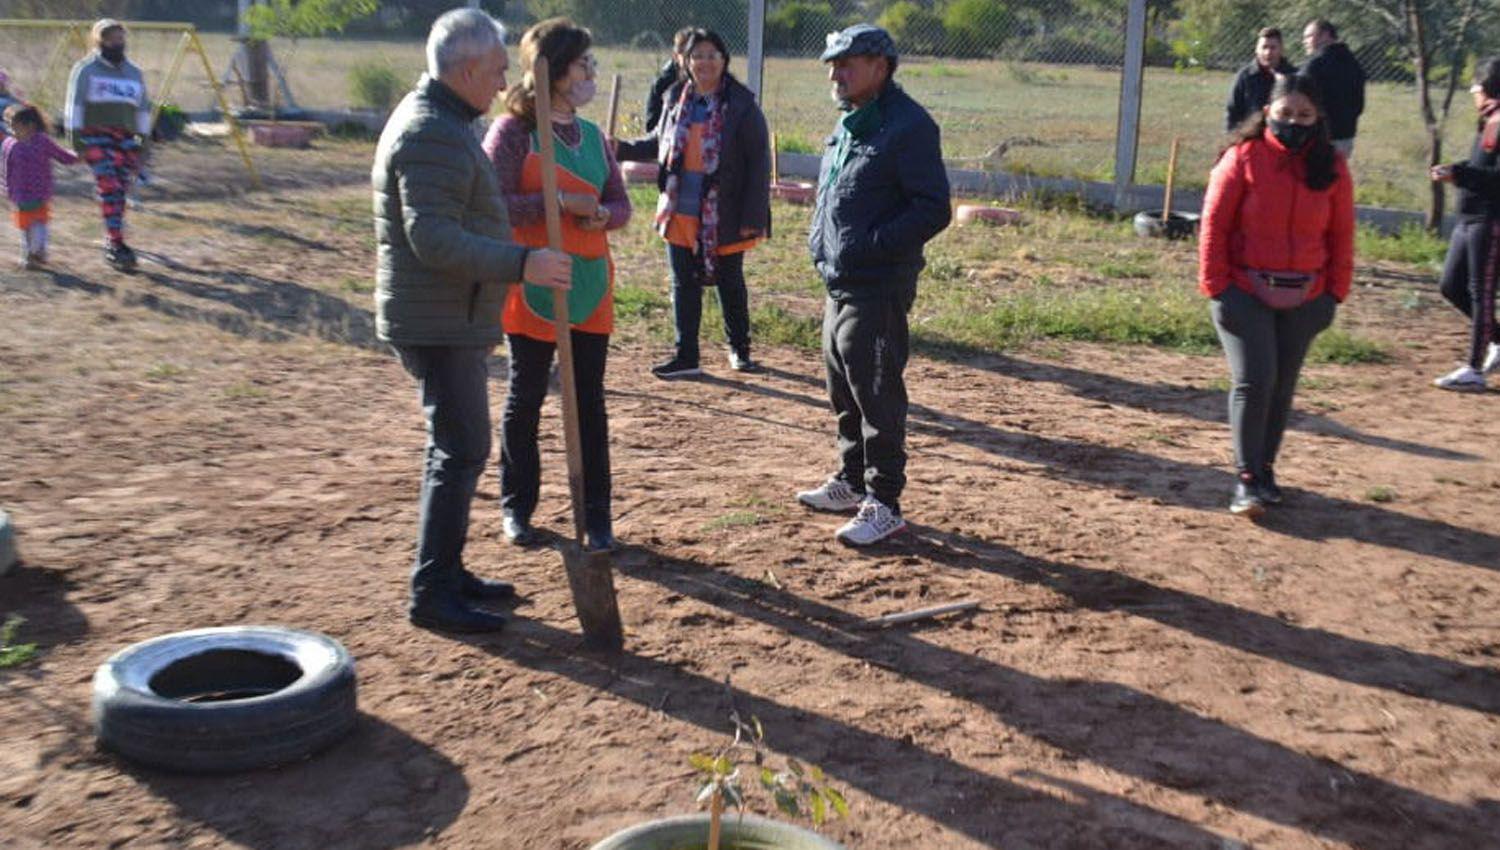 Heacutector Ibaacutentildeez nintildeos del Chantildearcito y obreros plantaron aacuterboles